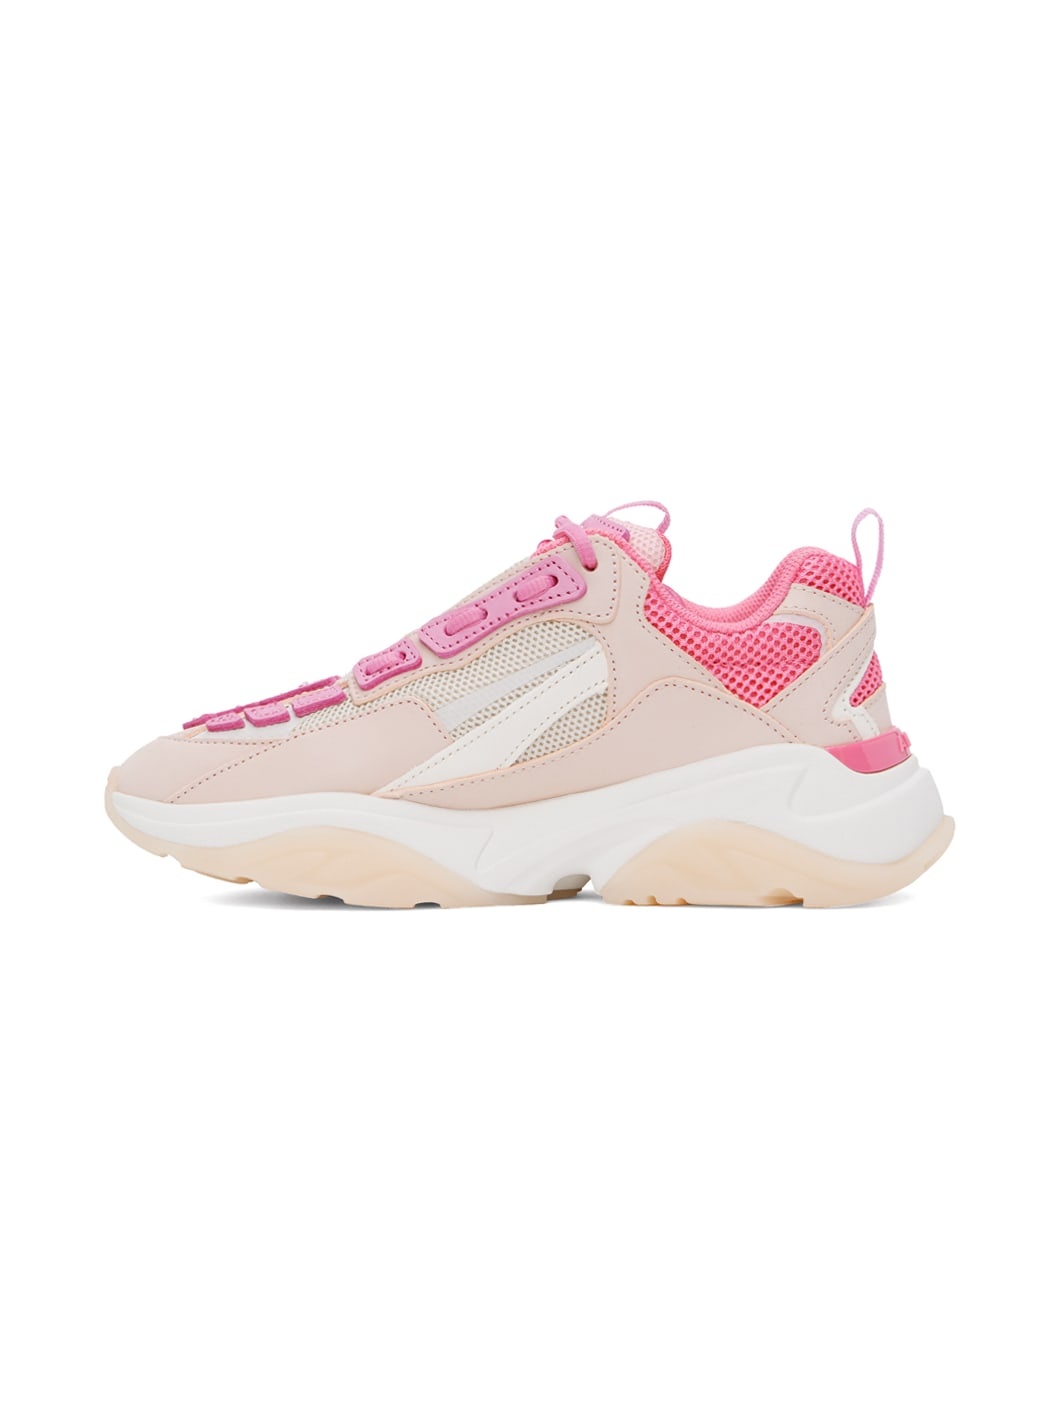 Pink Bone Runner Sneakers - 3